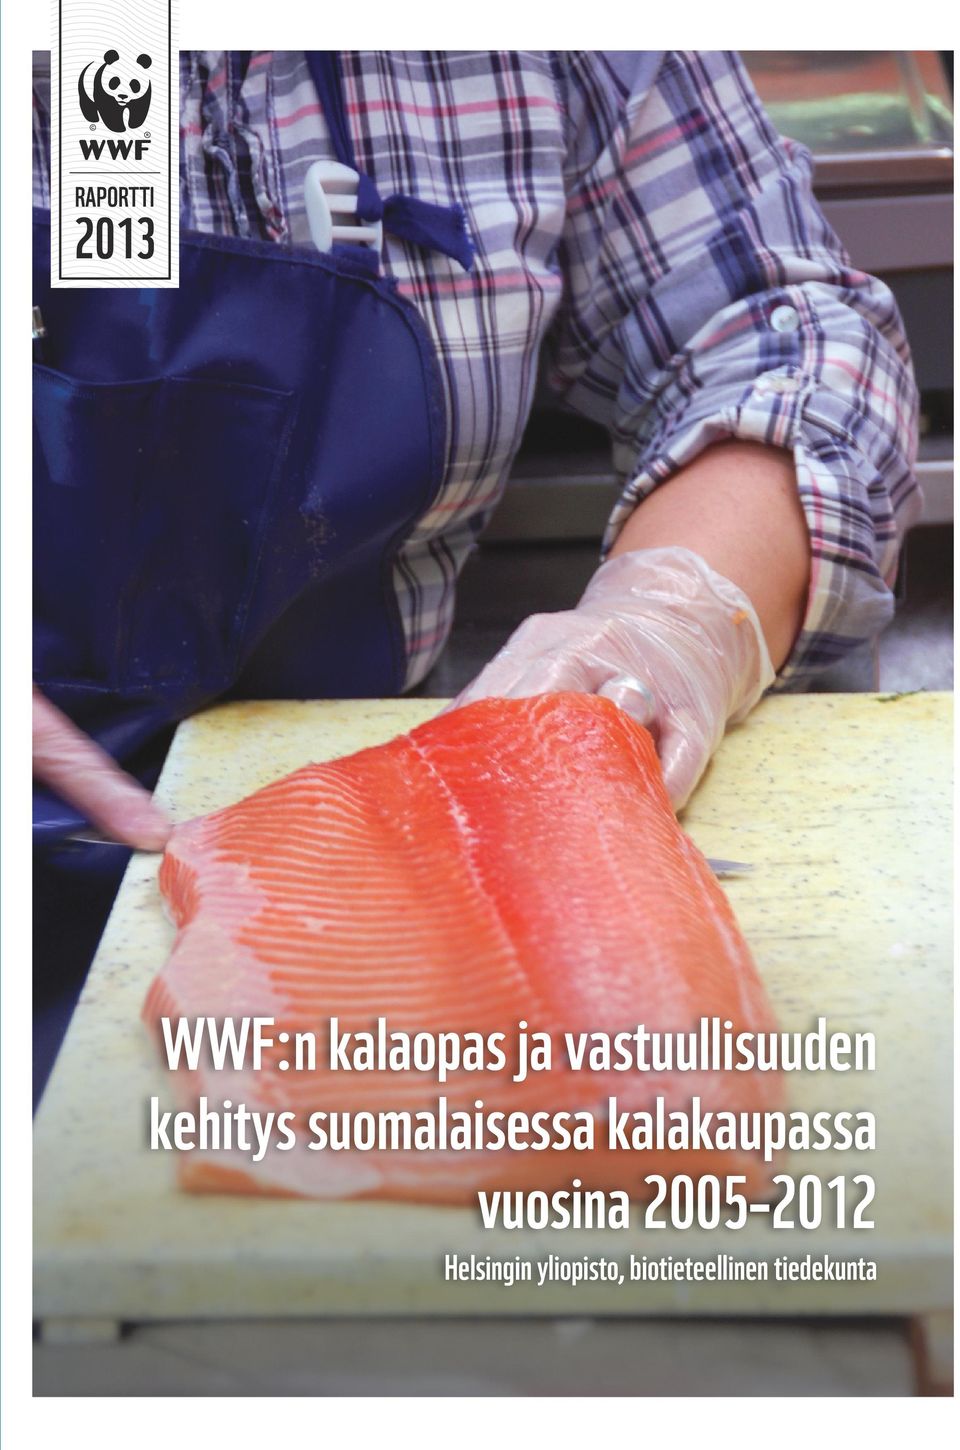 suomalaisessa kalakaupassa vuosina